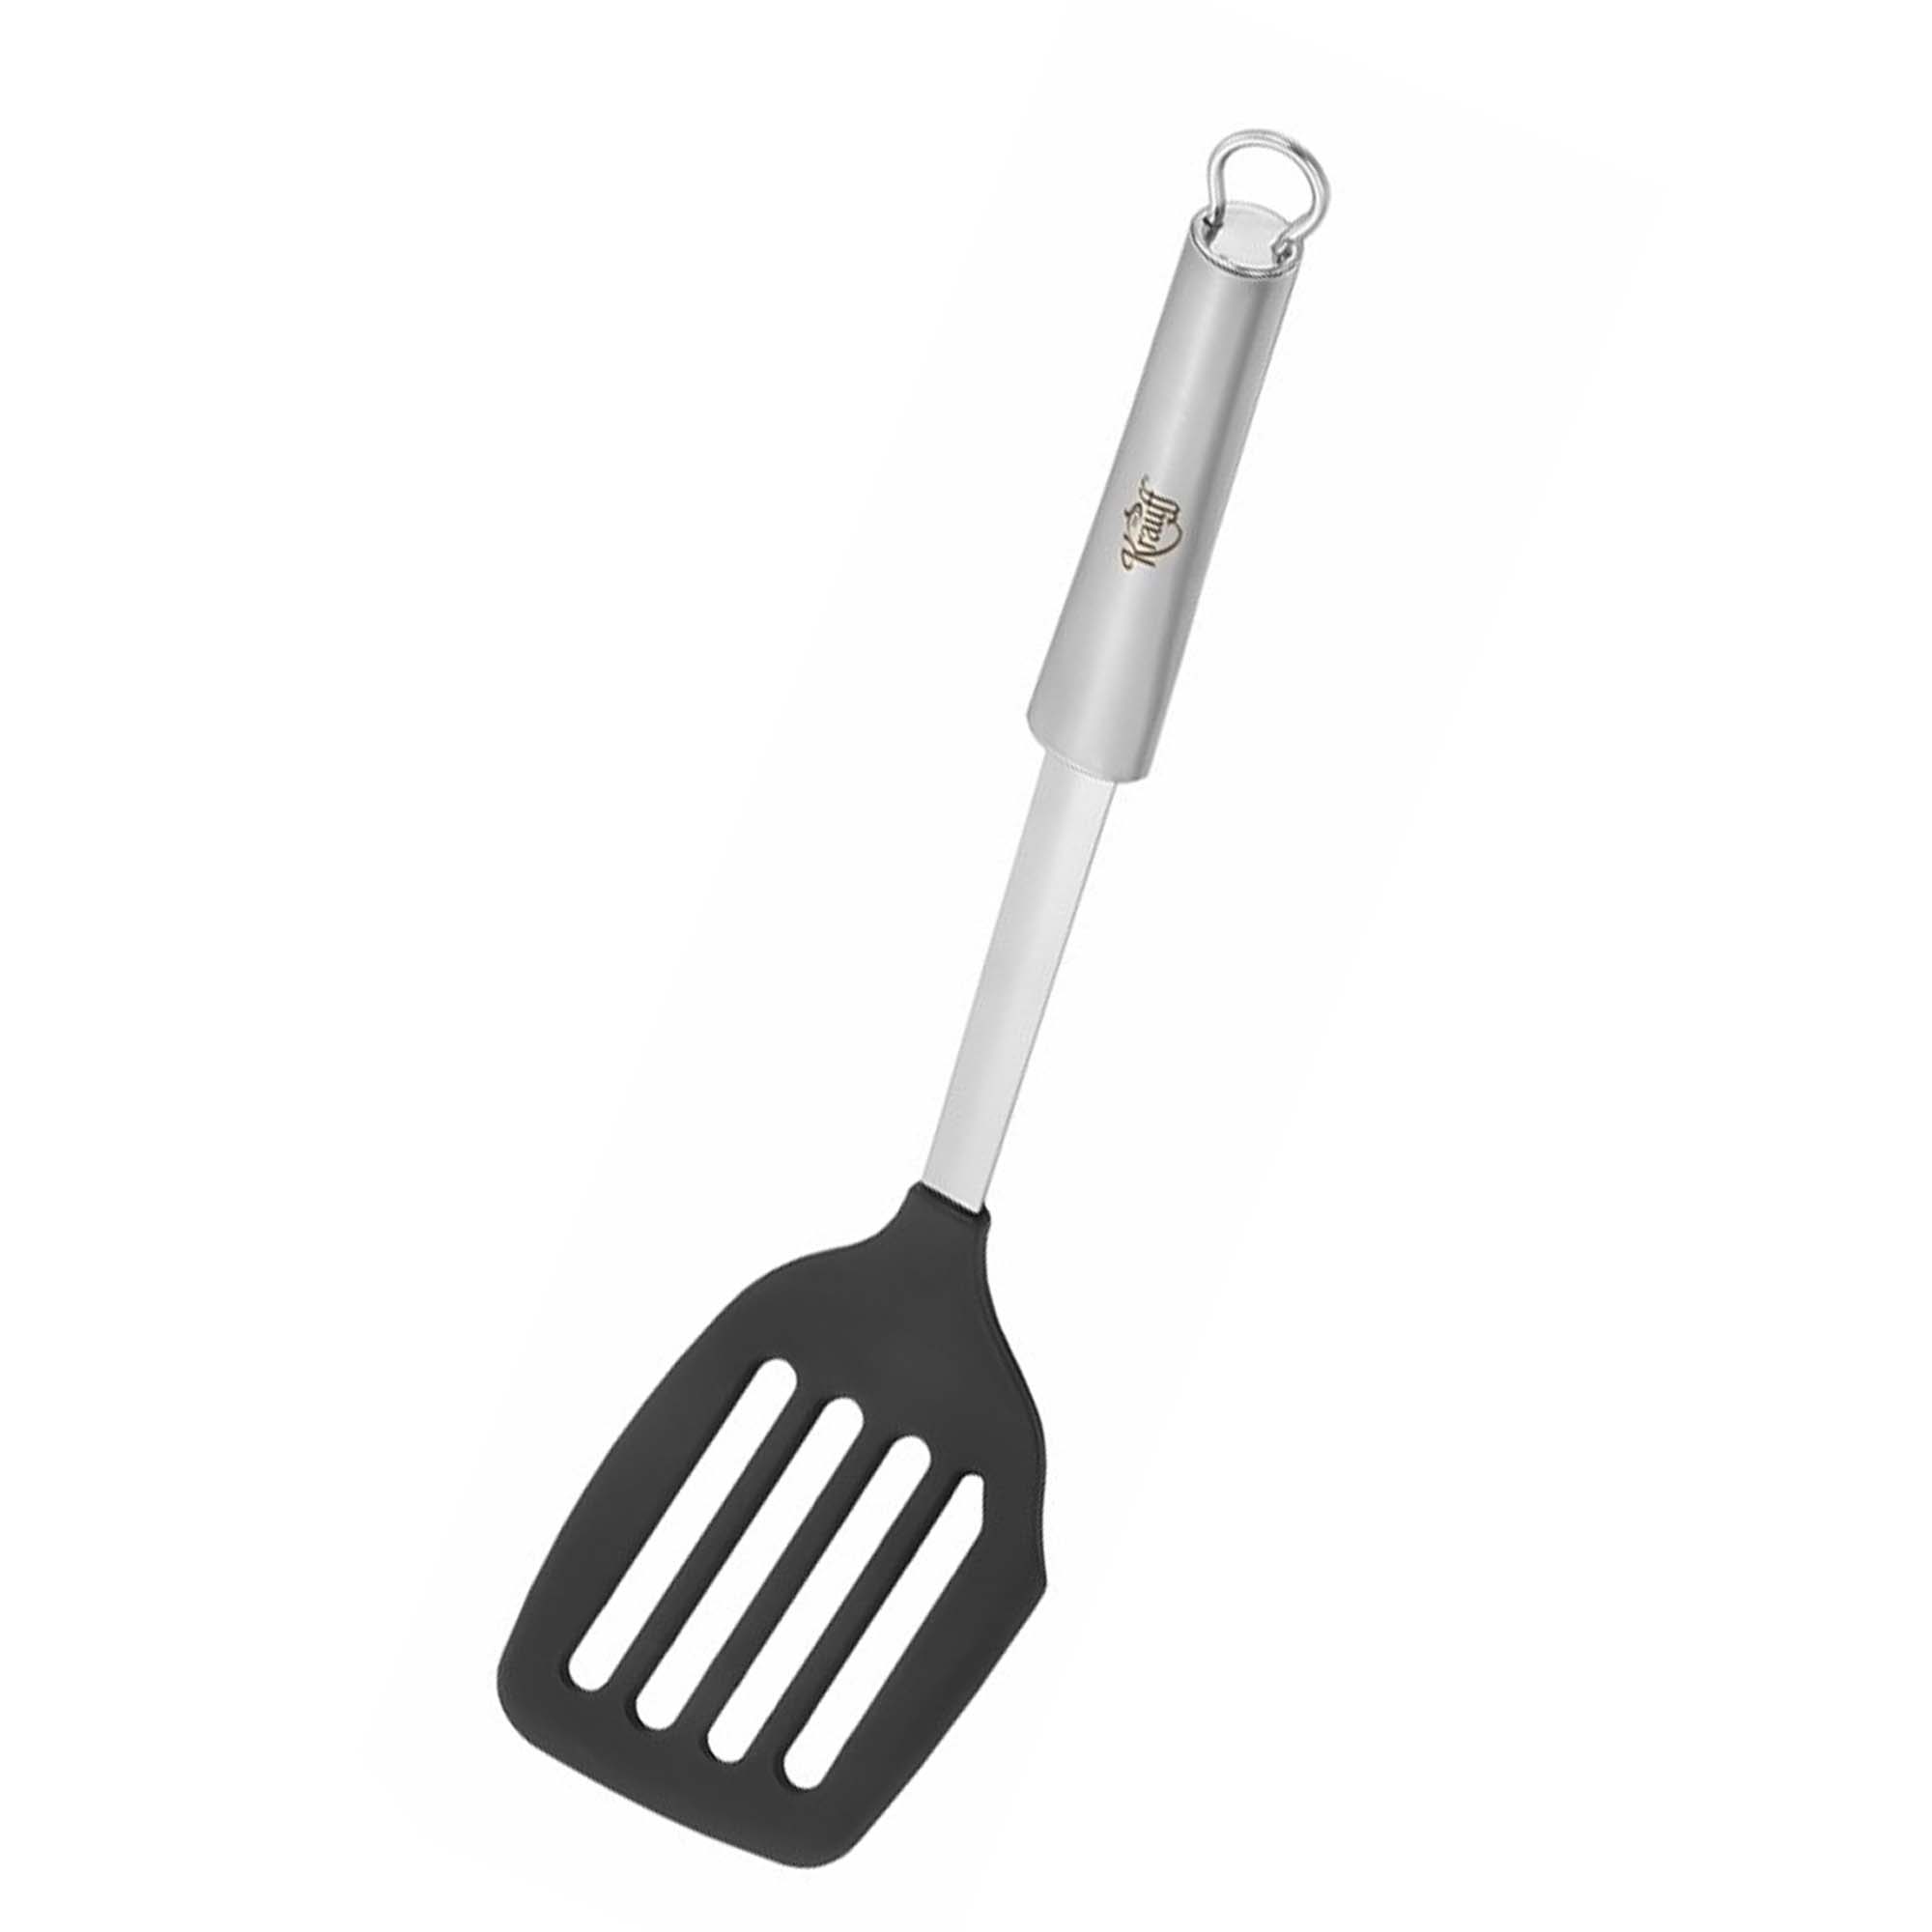 Leckerei kitchen tool set